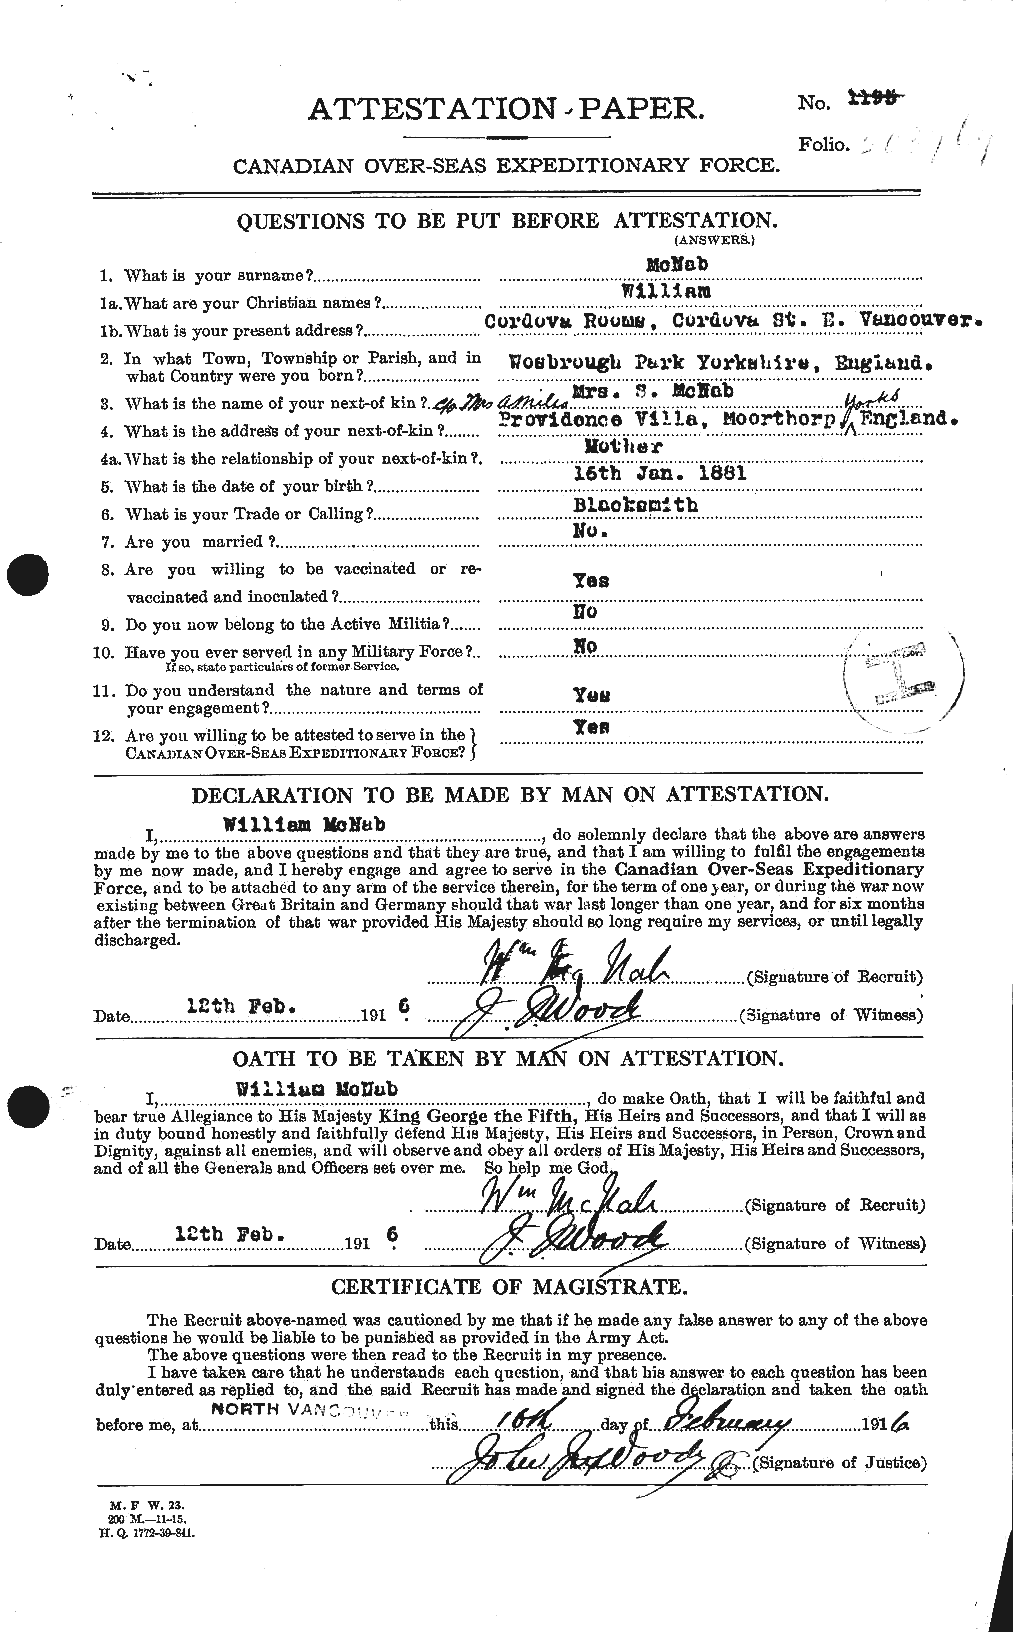 Dossiers du Personnel de la Première Guerre mondiale - CEC 536283a